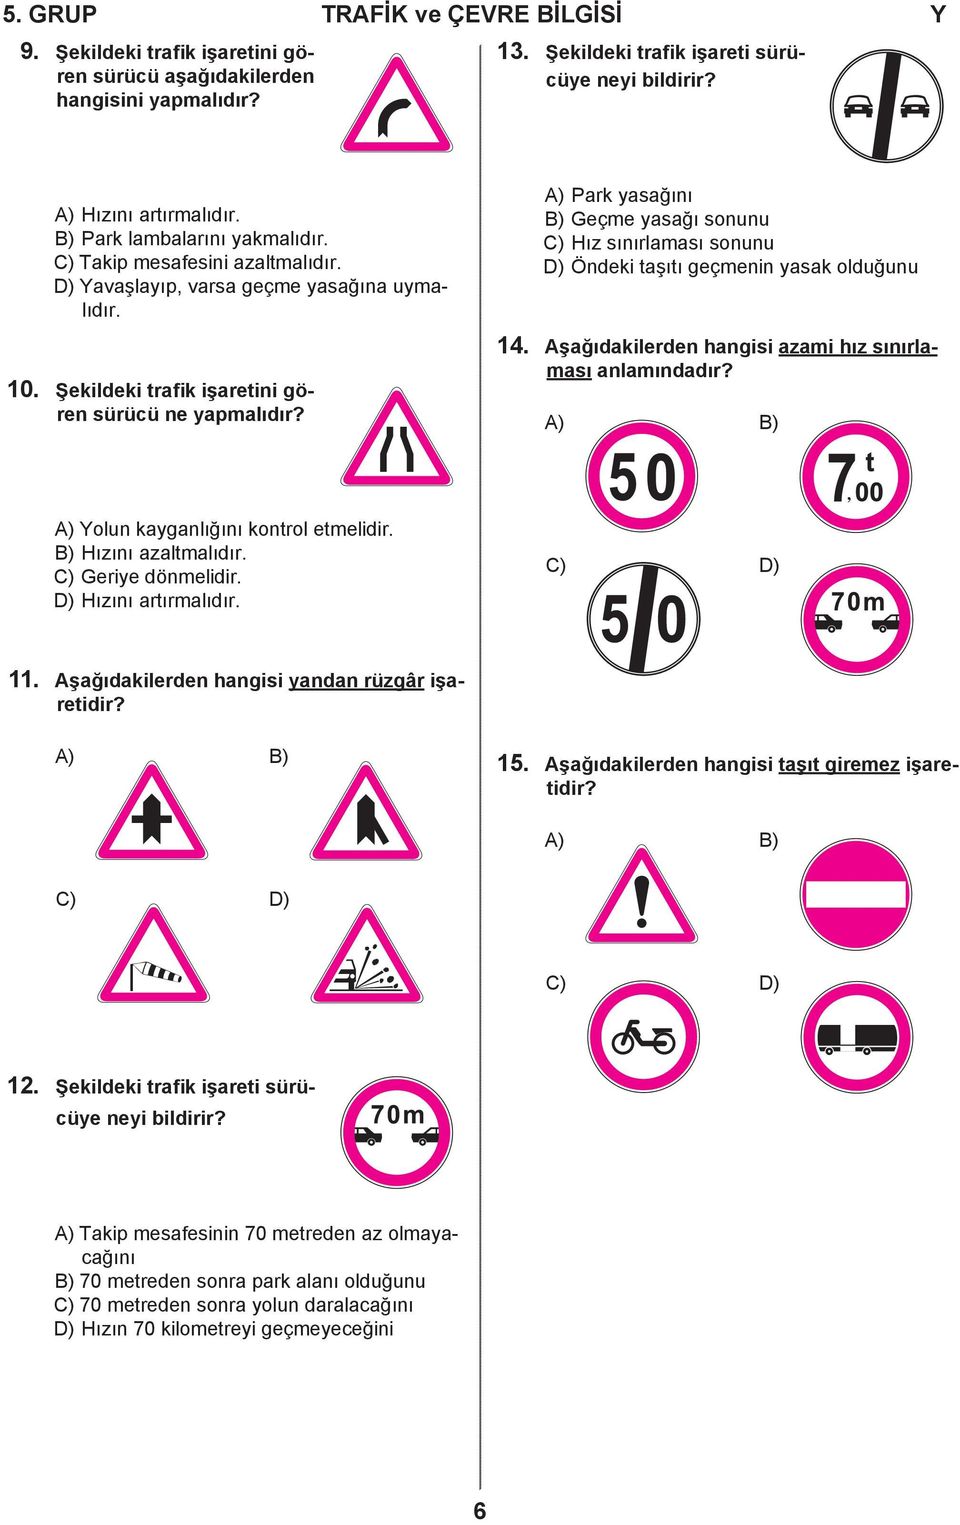 A) Park yasağını B) Geçme yasağı sonunu C) Hız sınırlaması sonunu D) Öndeki taşıtı geçmenin yasak olduğunu 14. Aşağıdakilerden hangisi azami hız sınırlaması anlamındadır?